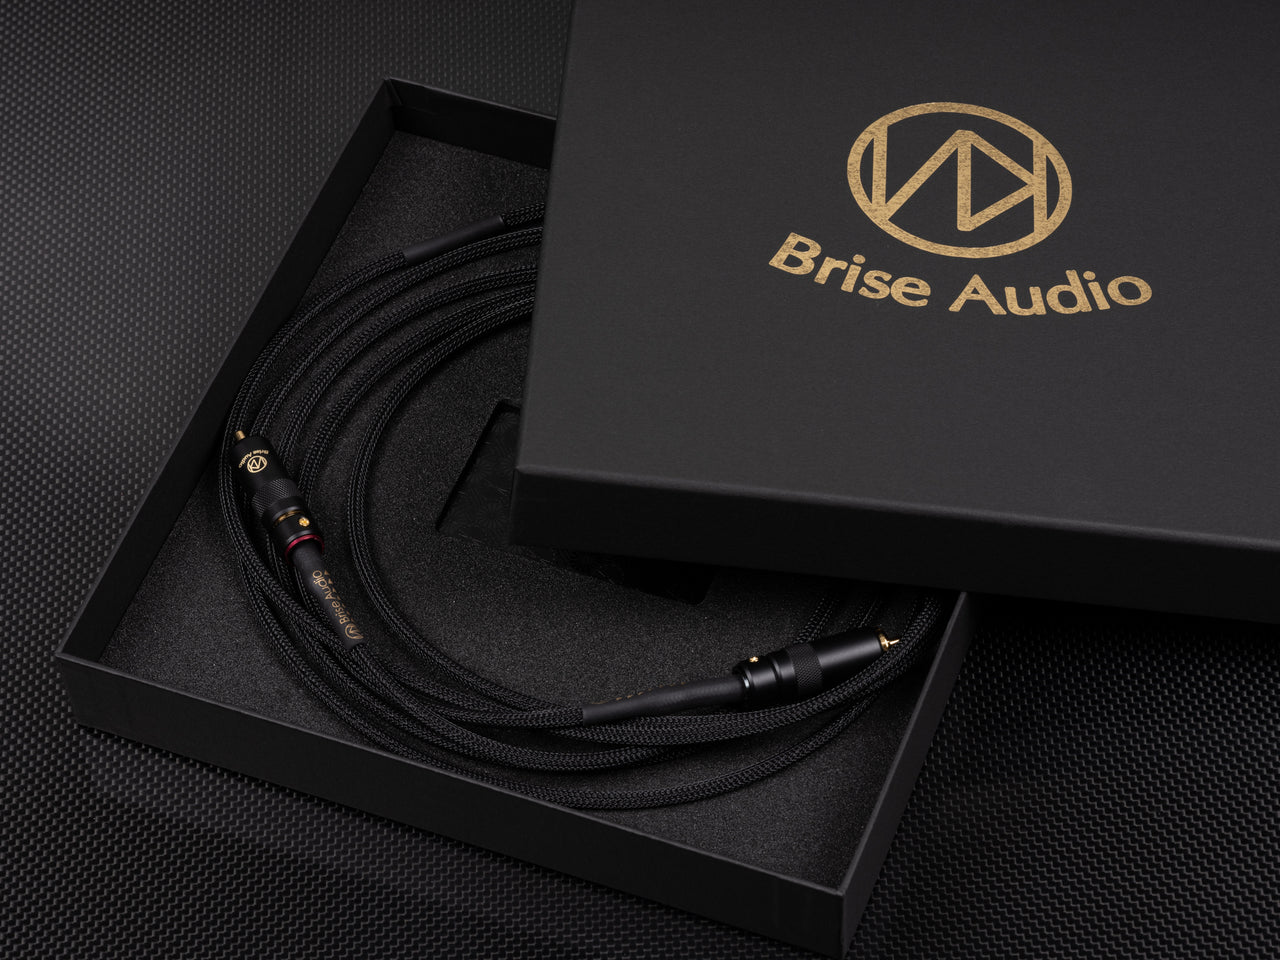 BriseAudioは2021年12月22日にハイエンドオーディオ向けインターコネクトケーブルYATONO-RCAを発売します。